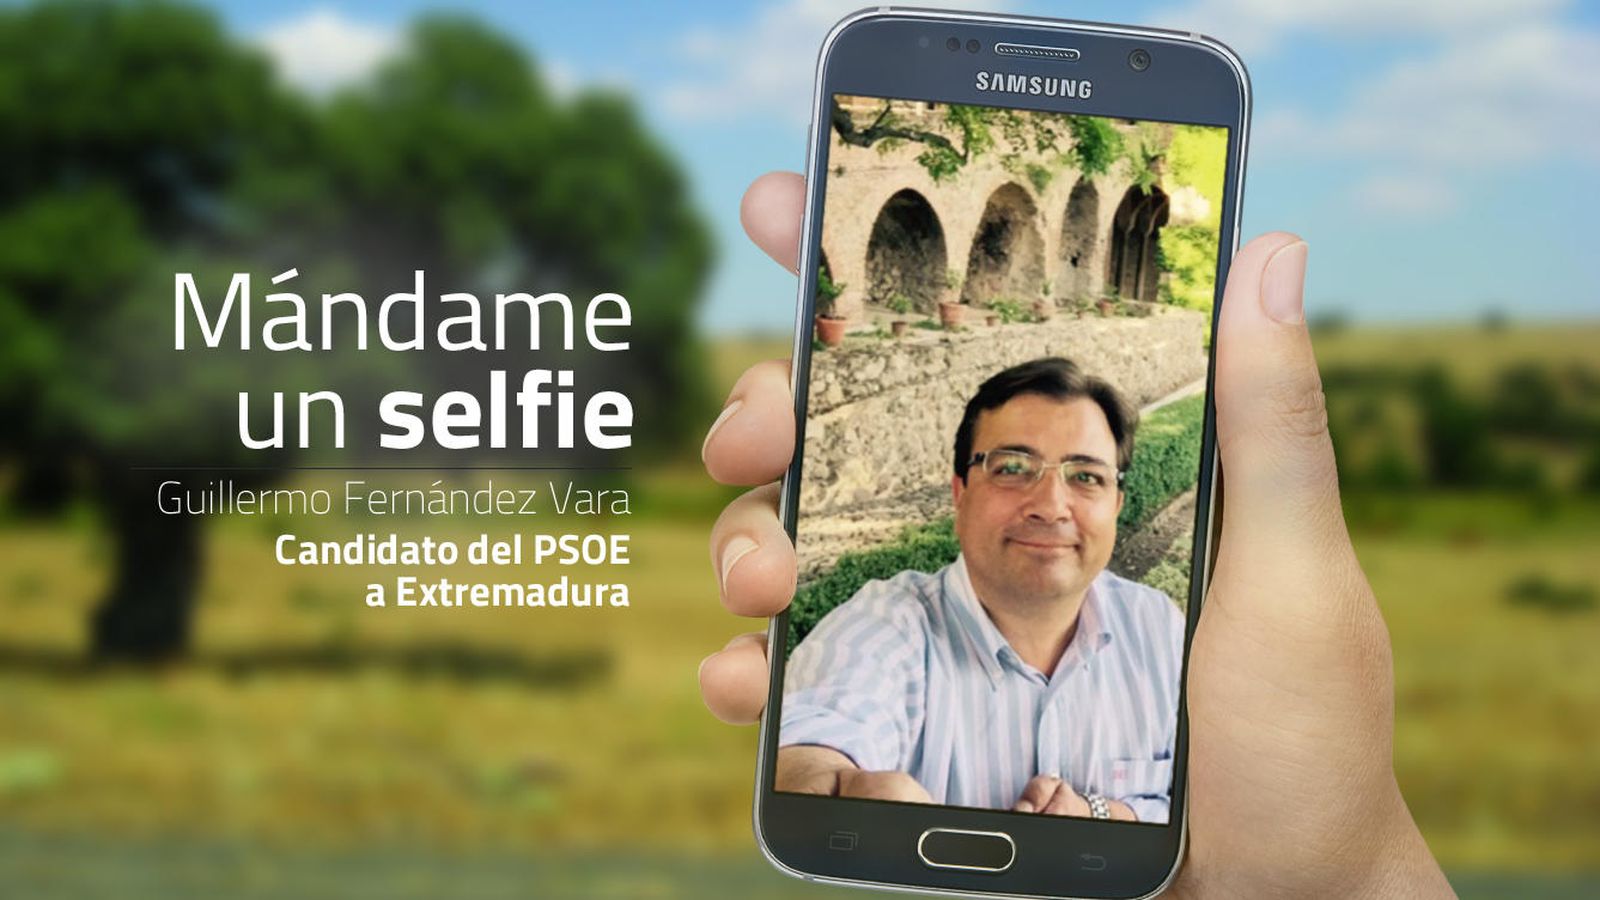 Foto: Guillermo Fernández Vara, candidato del PSOE a Extremadura. (EC)